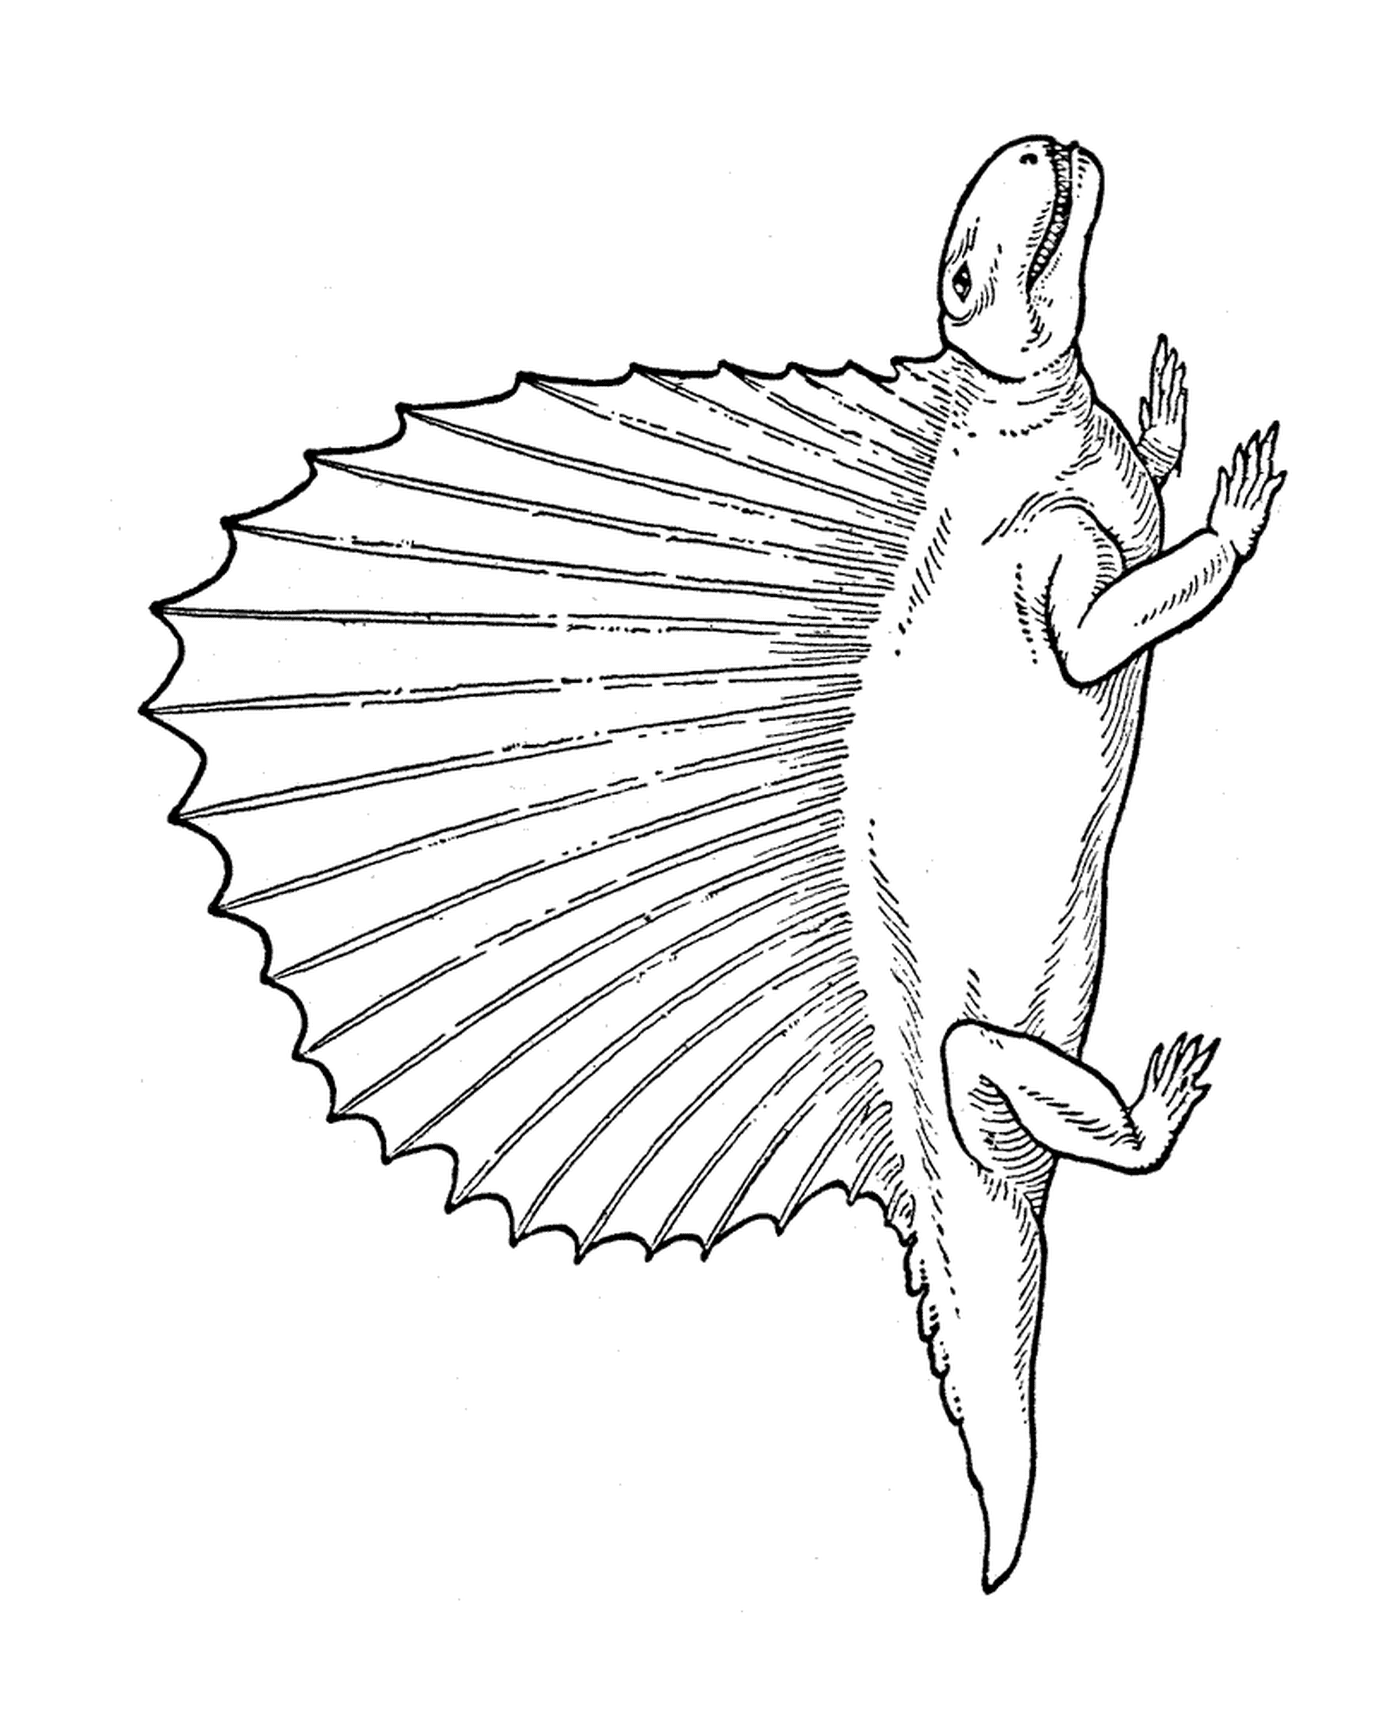  Um lagarto de cauda longa 